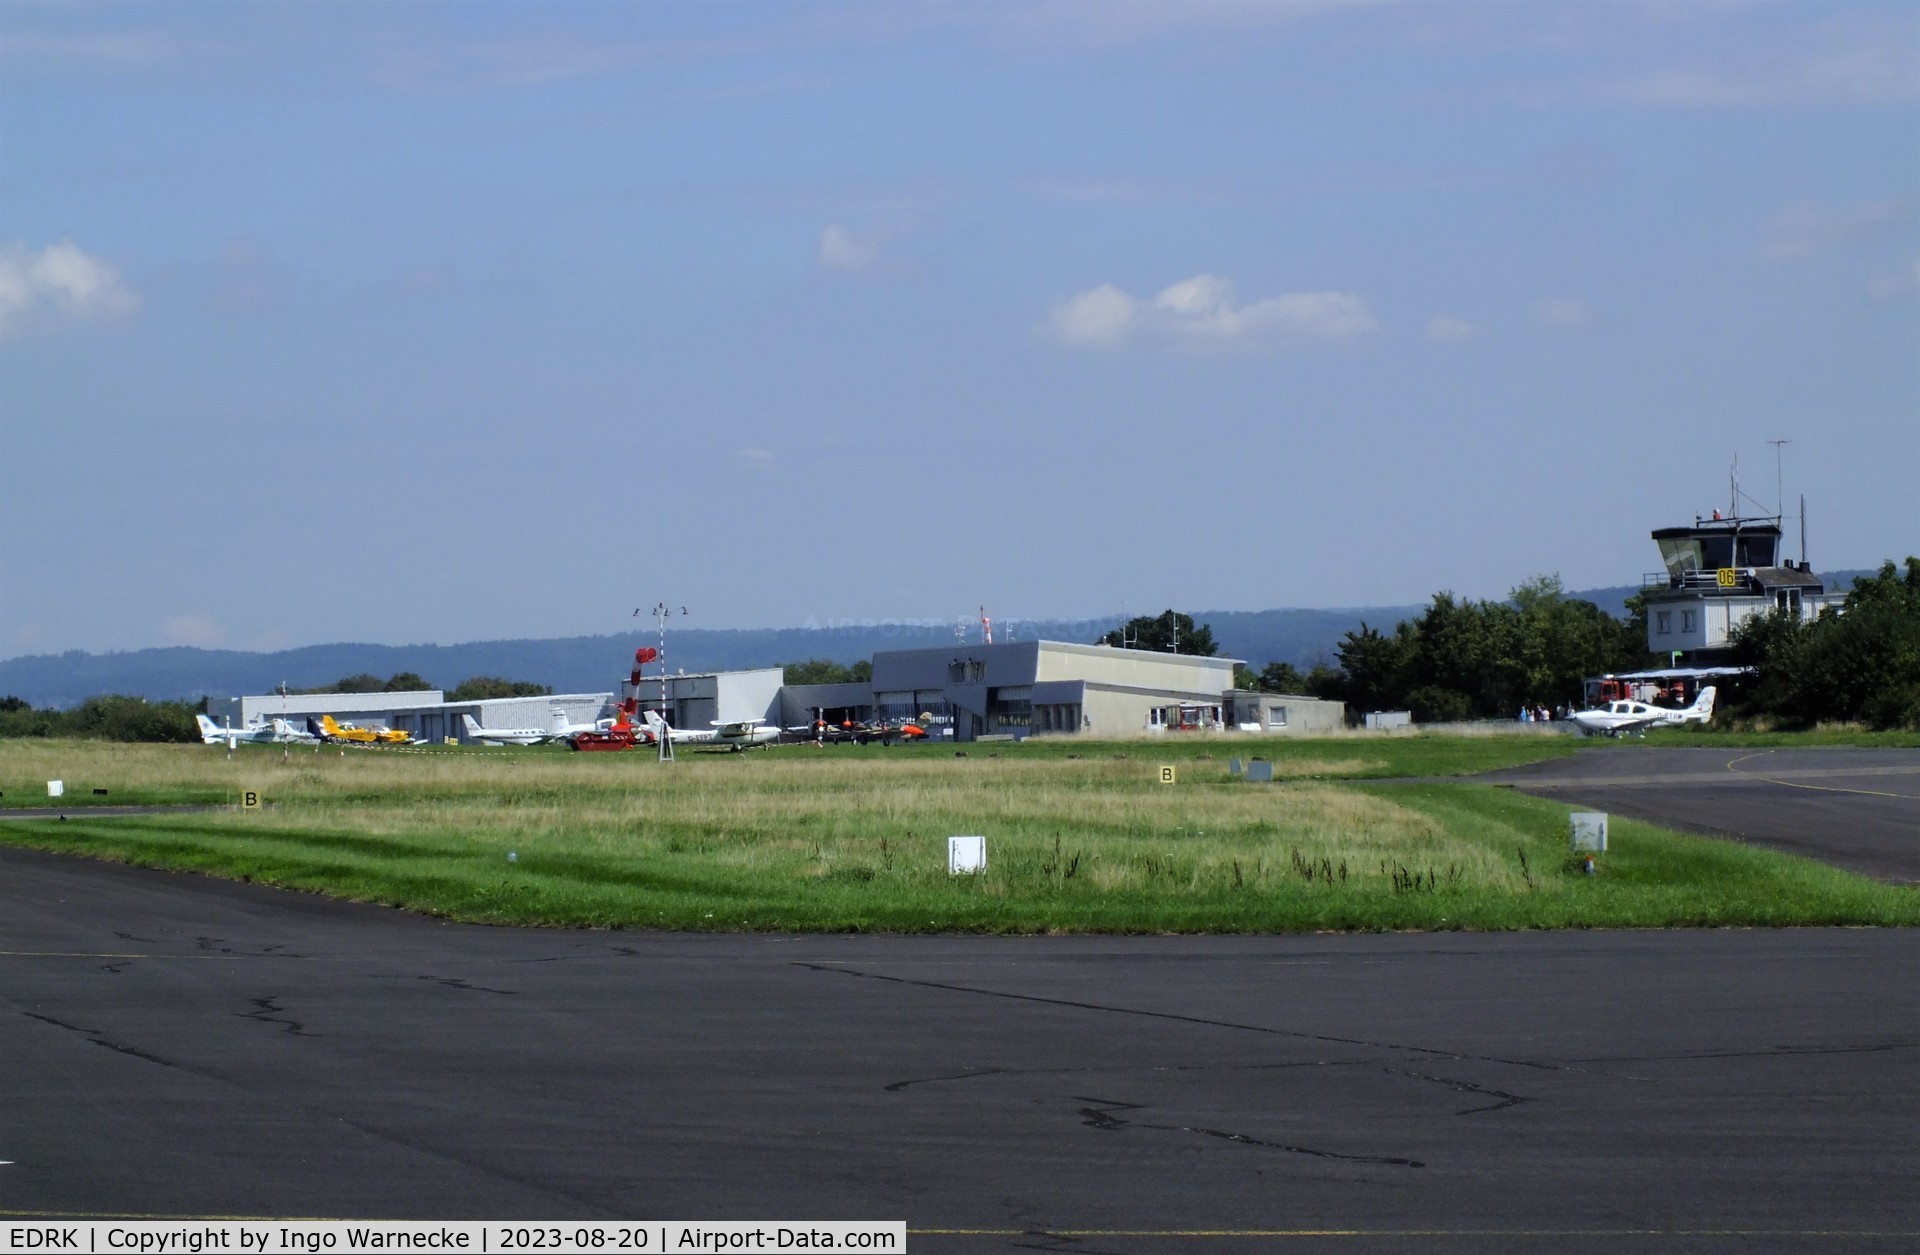 Koblenz Winningen Airport, Winningen, Mosel Germany (EDRK) - airside view of Koblenz-Winningen airfield